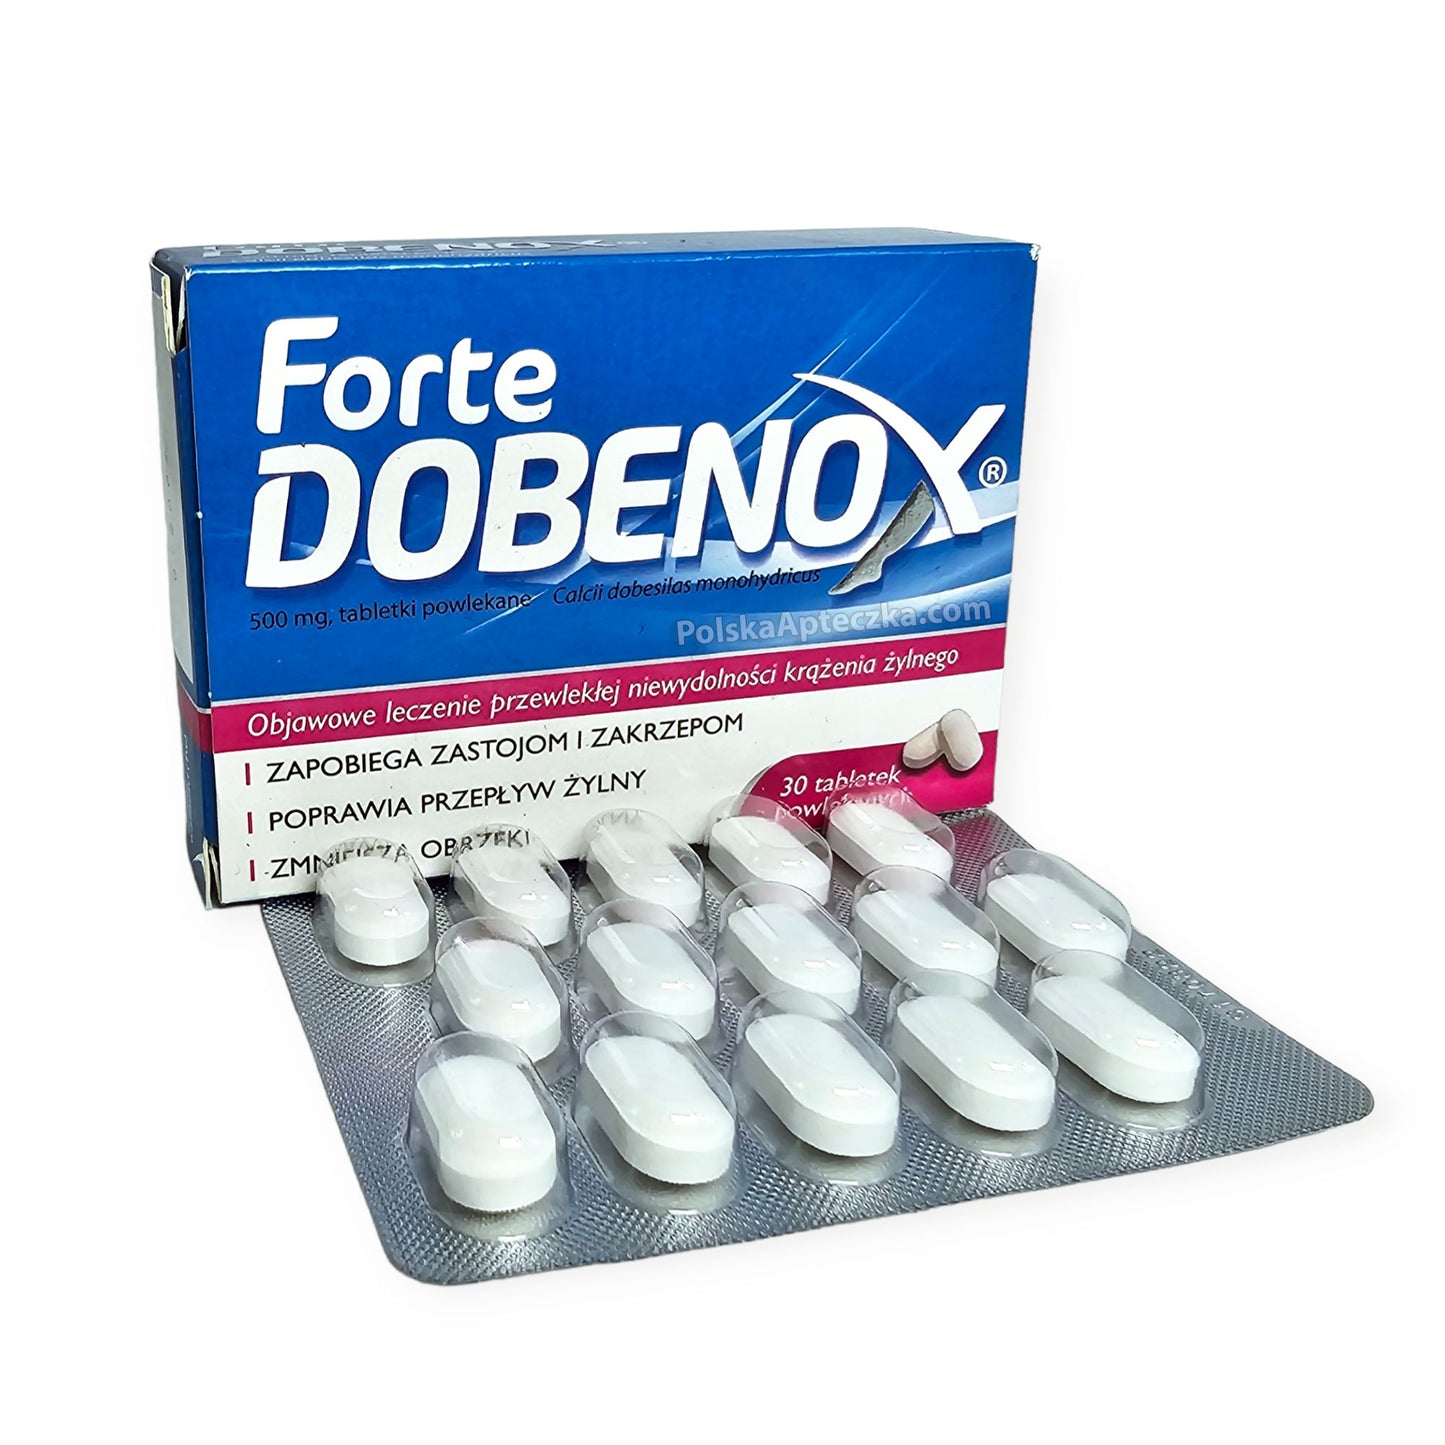 dobenox forte tablets